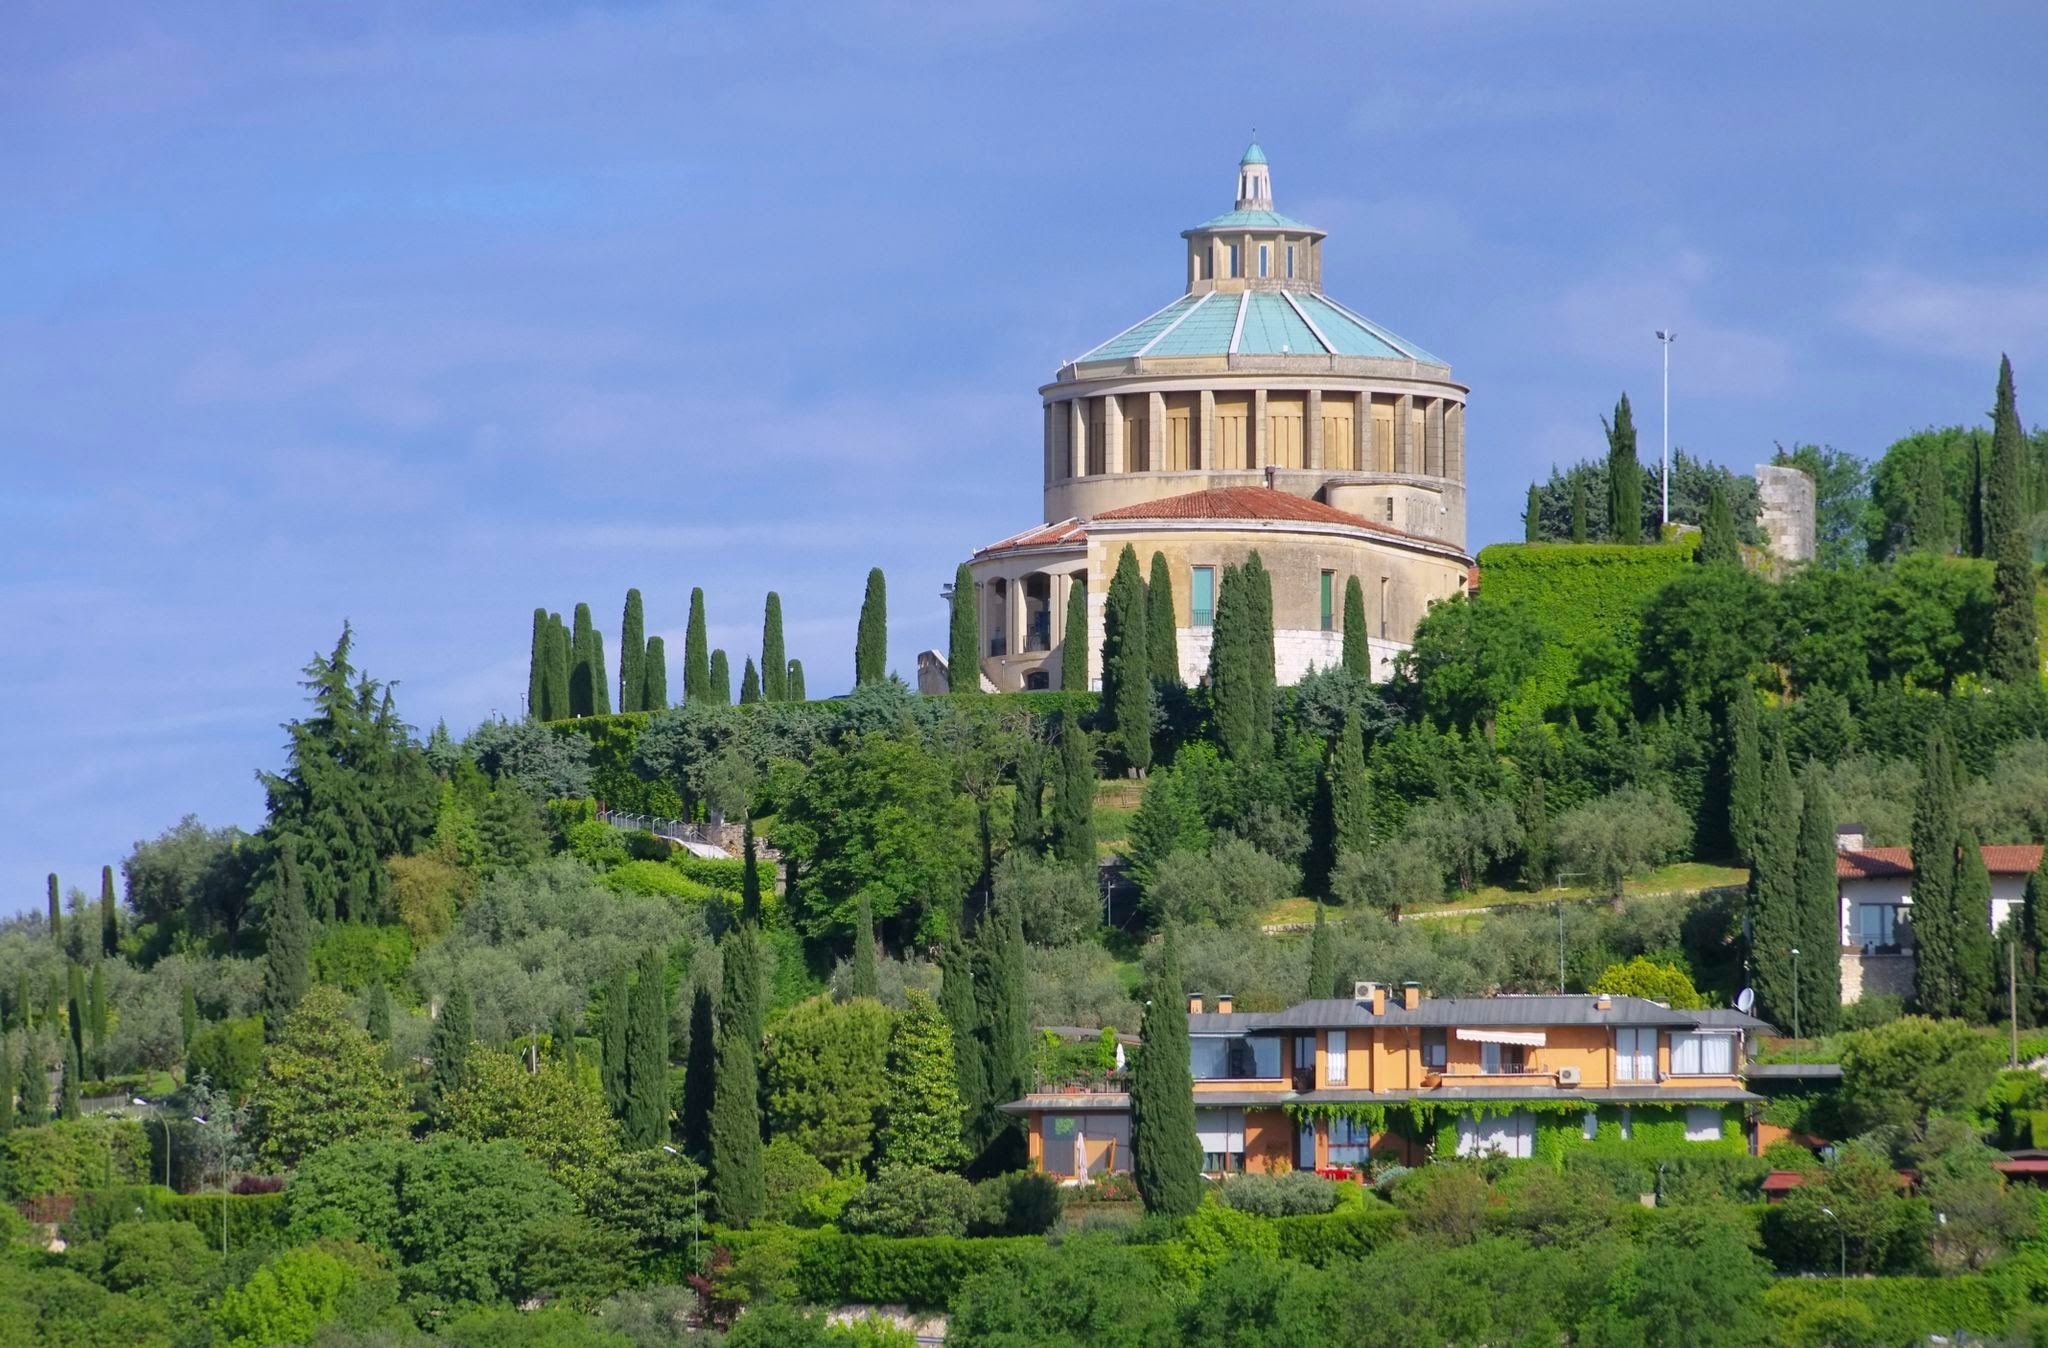 Santuario della Nostra Signora di Lourdes in Italy, Europe | Architecture - Rated 3.7